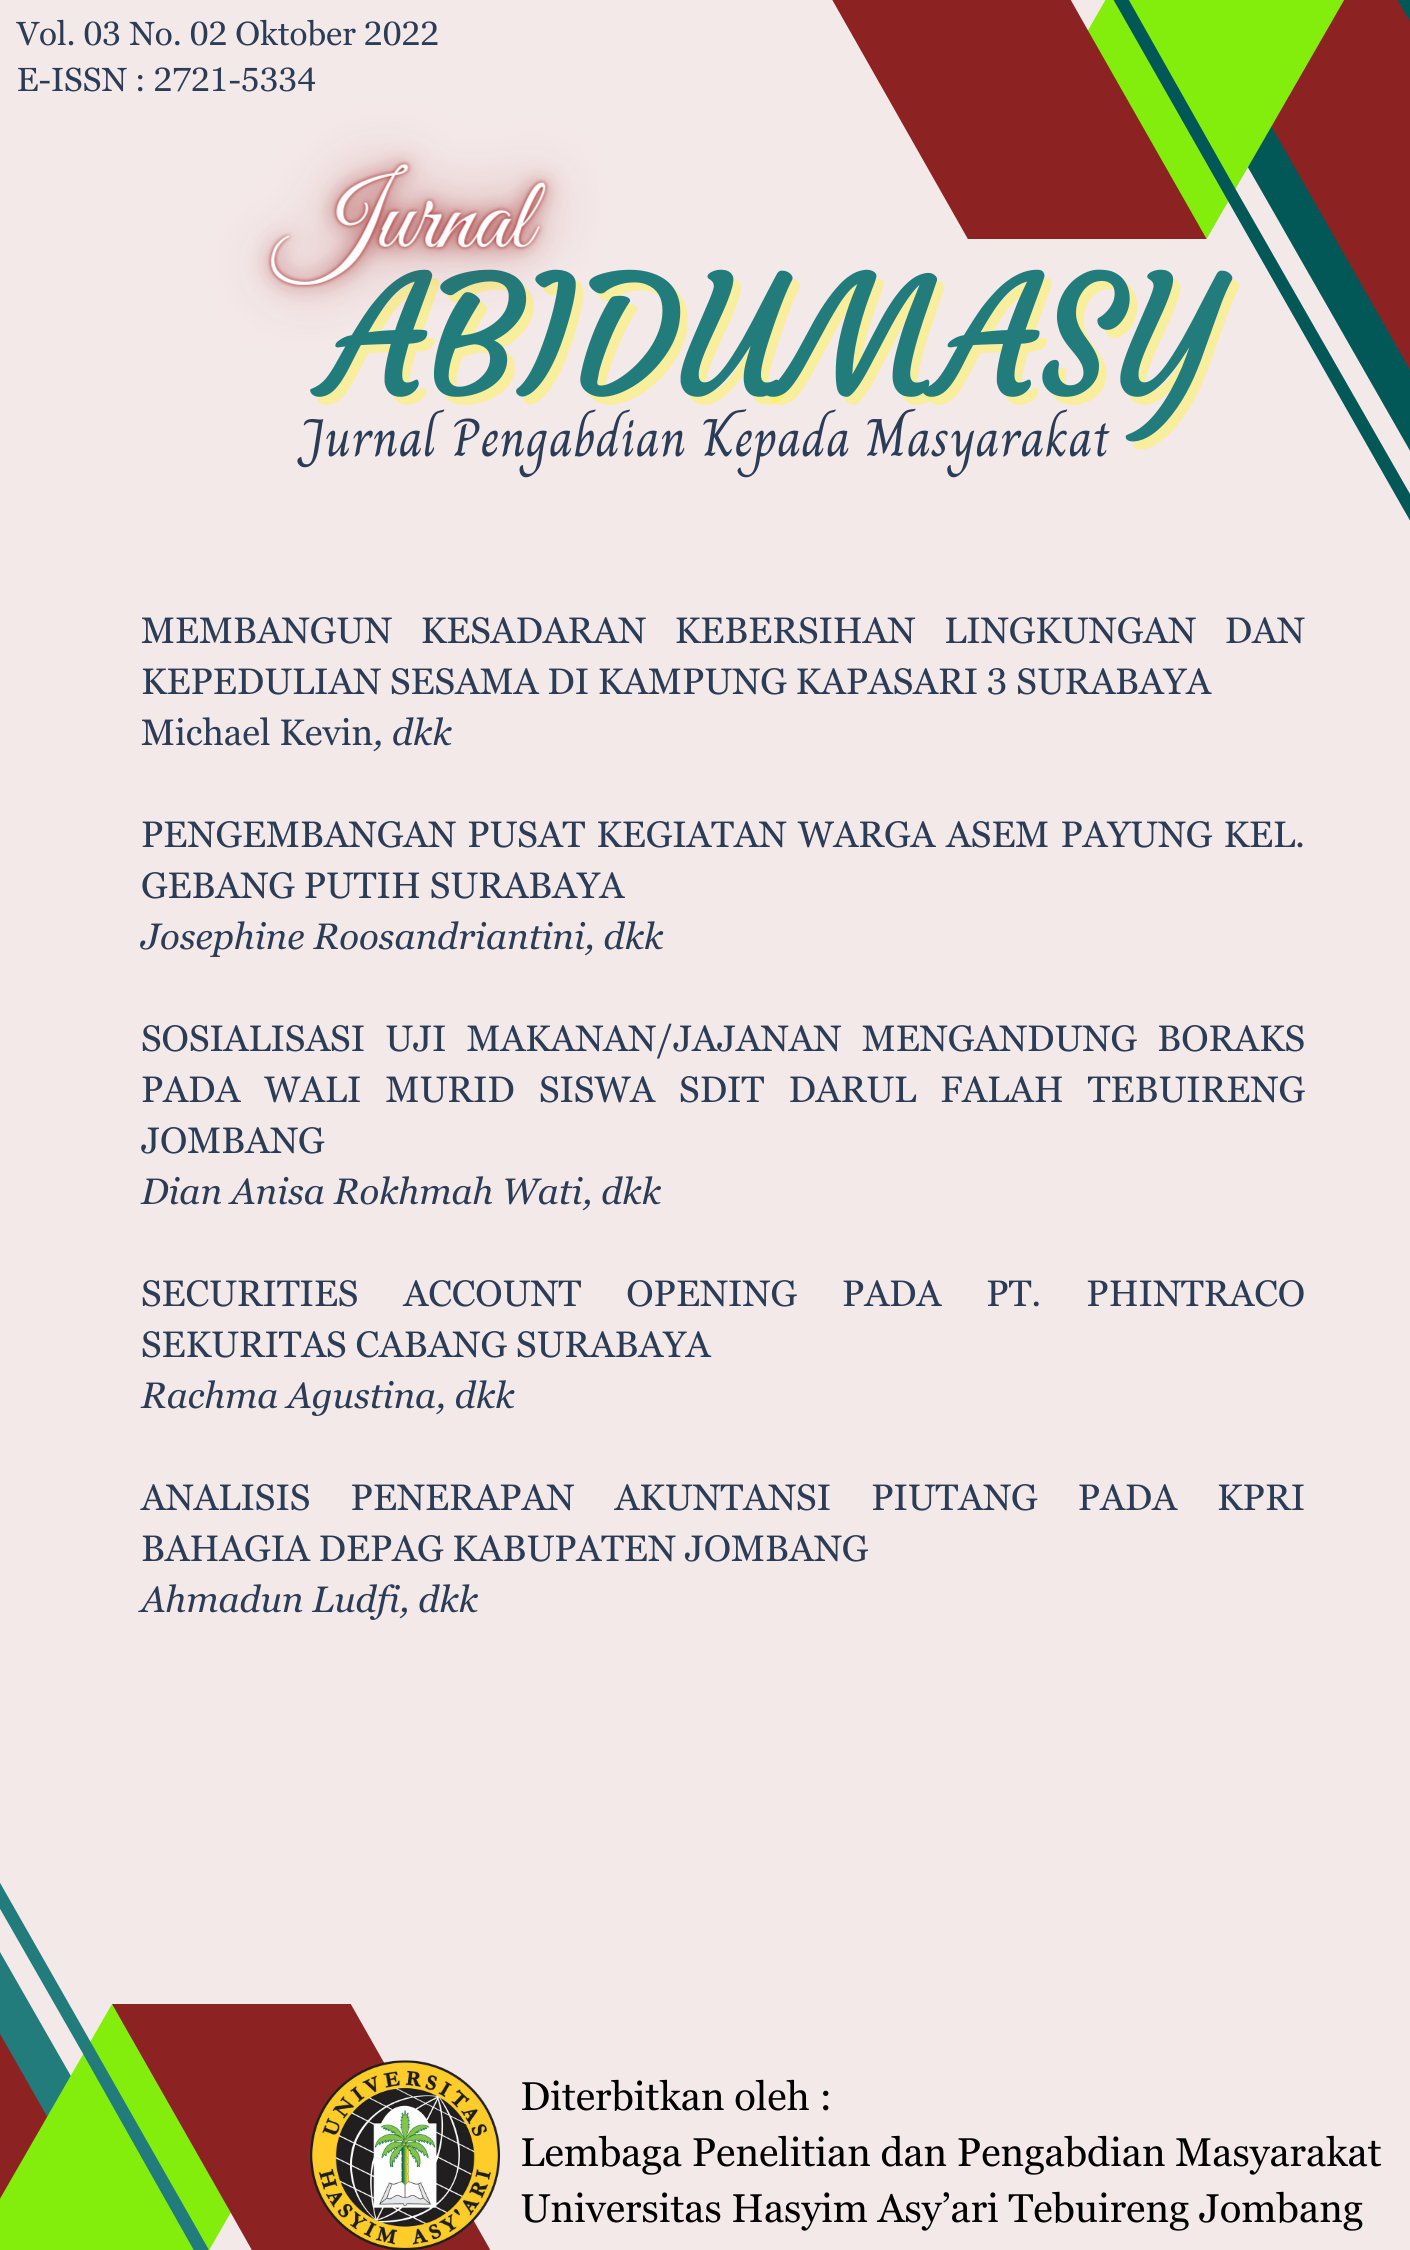 					Lihat Vol 3 No 2 (2022): ABIDUMASY :  JURNAL PENGABDIAN KEPADA MASYARAKAT 
				